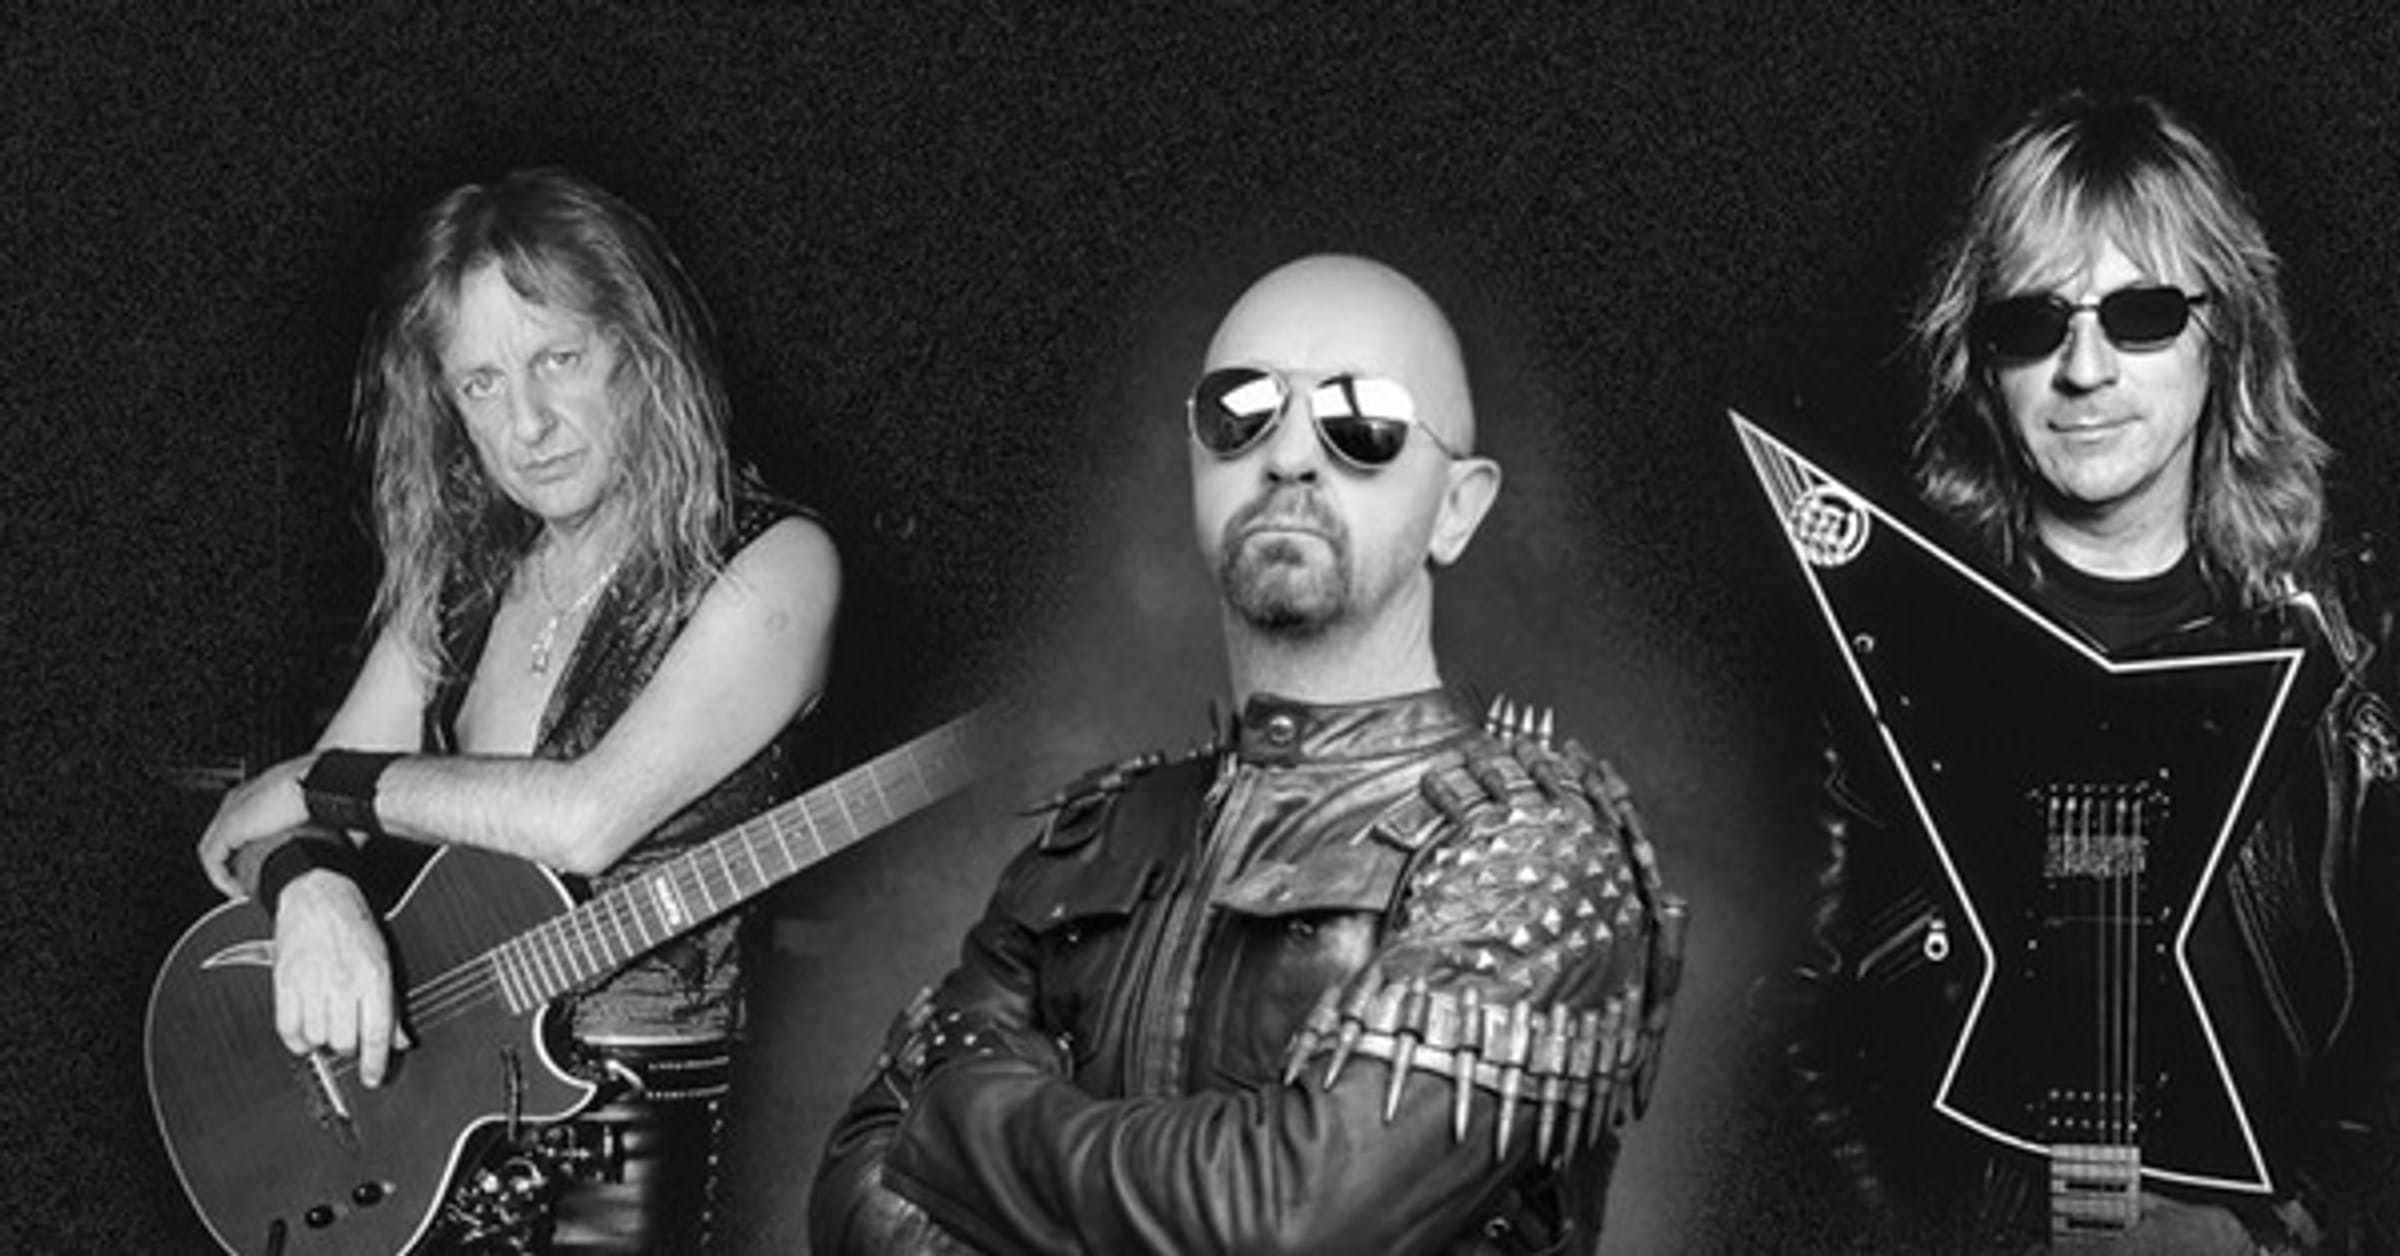 Top 10 Judas Priest Albums Ranked